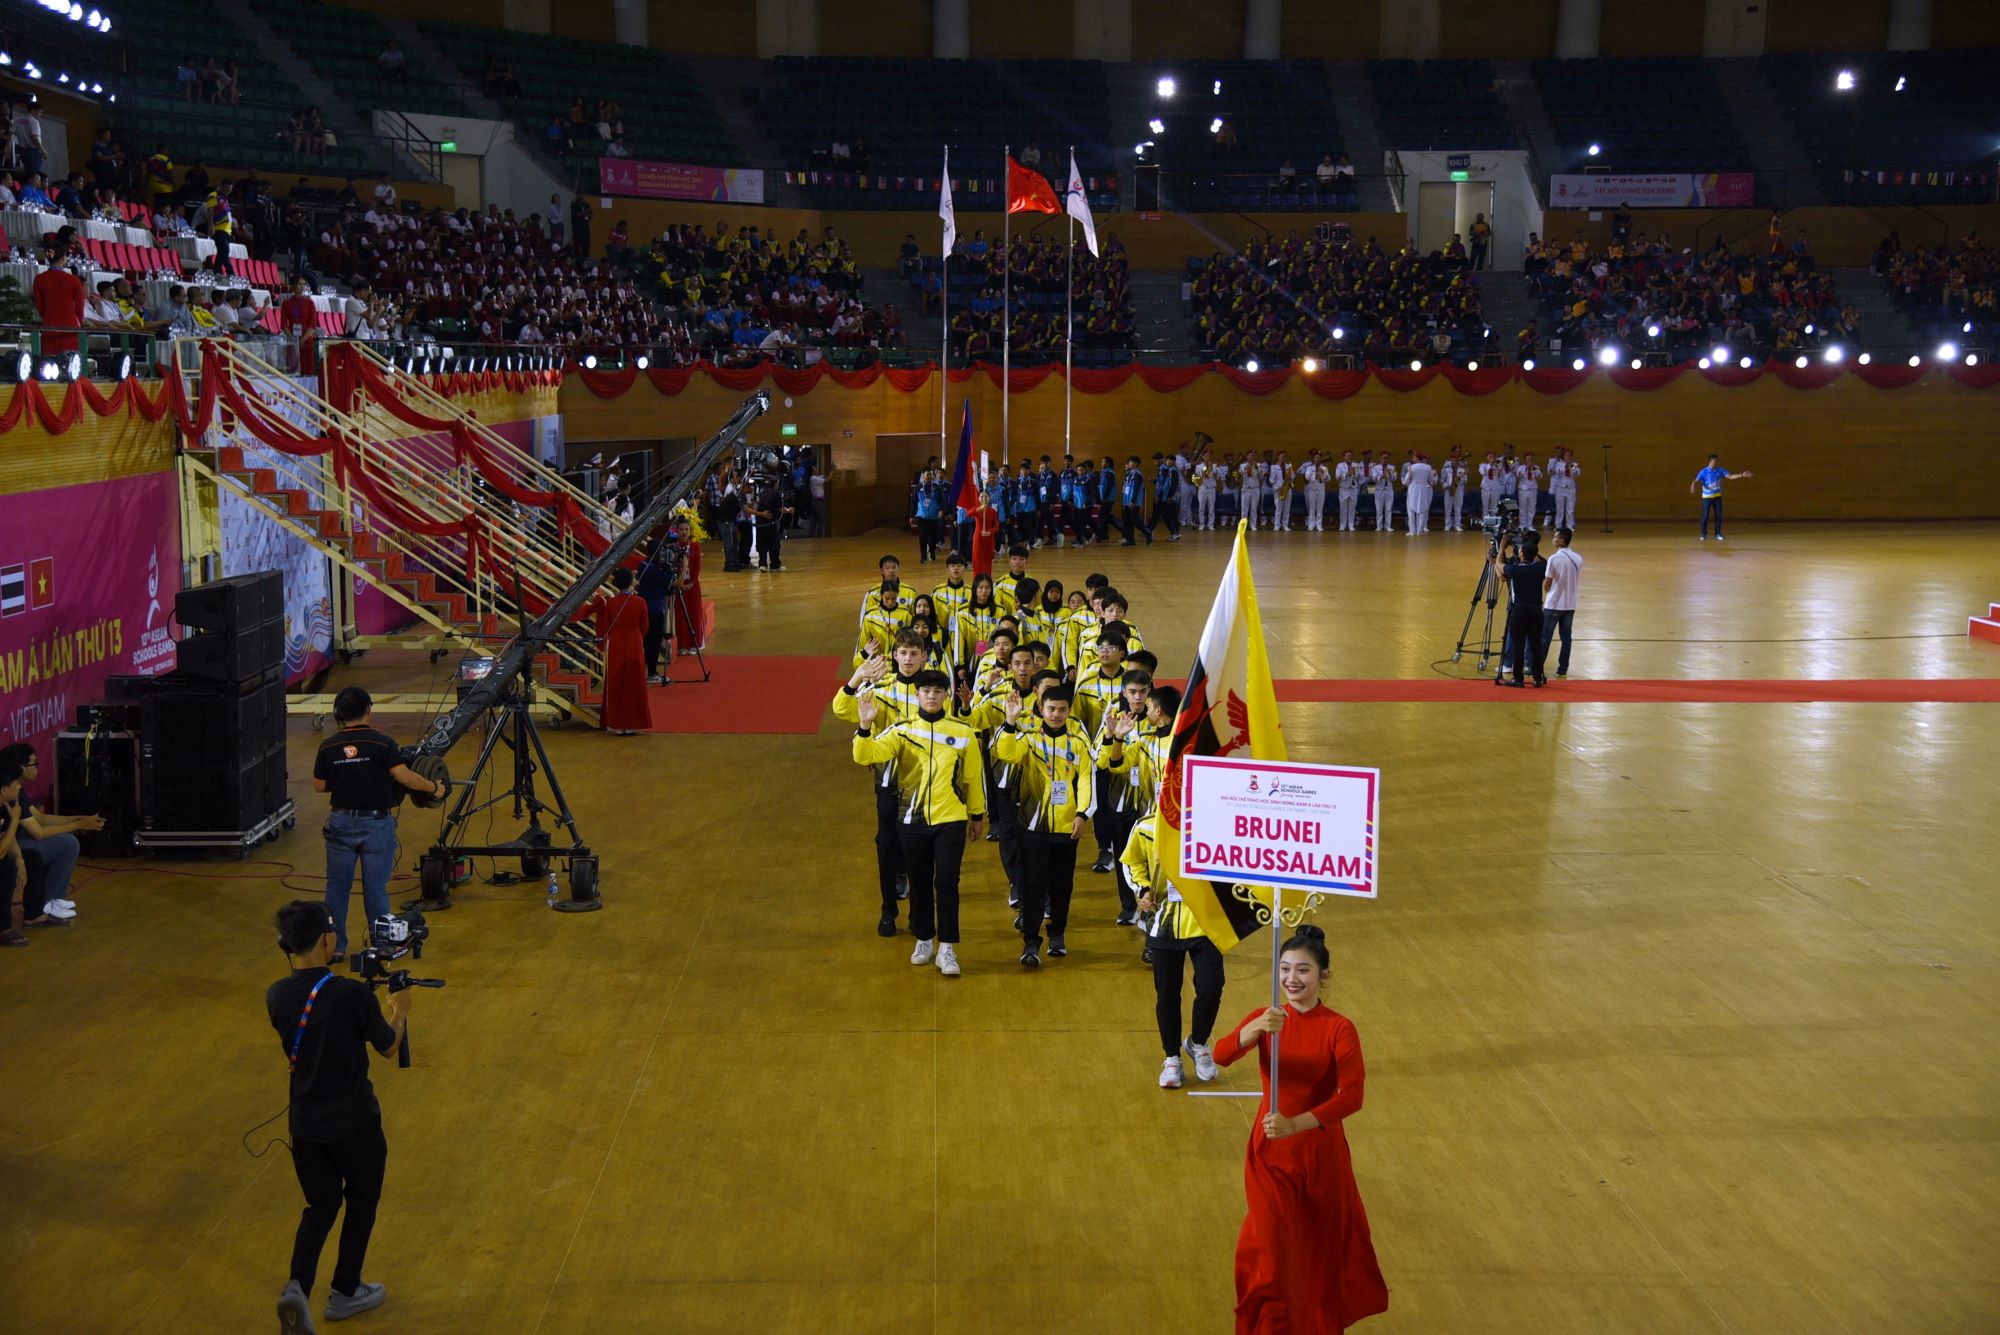 10 đoàn thể thao học sinh các quốc gia có mặt tại ASEAN Schools Games XIII – 2024 đã lần lượt diễu hành qua lễ đài trong nghi thức “Biểu dương thành tích”. Trong ảnh là đoàn Brunei Darussalam - nước chủ nhà của Đại hội Thể thao học sinh Đông Nam Á lần thứ 14. Ảnh: T.Ngọc.